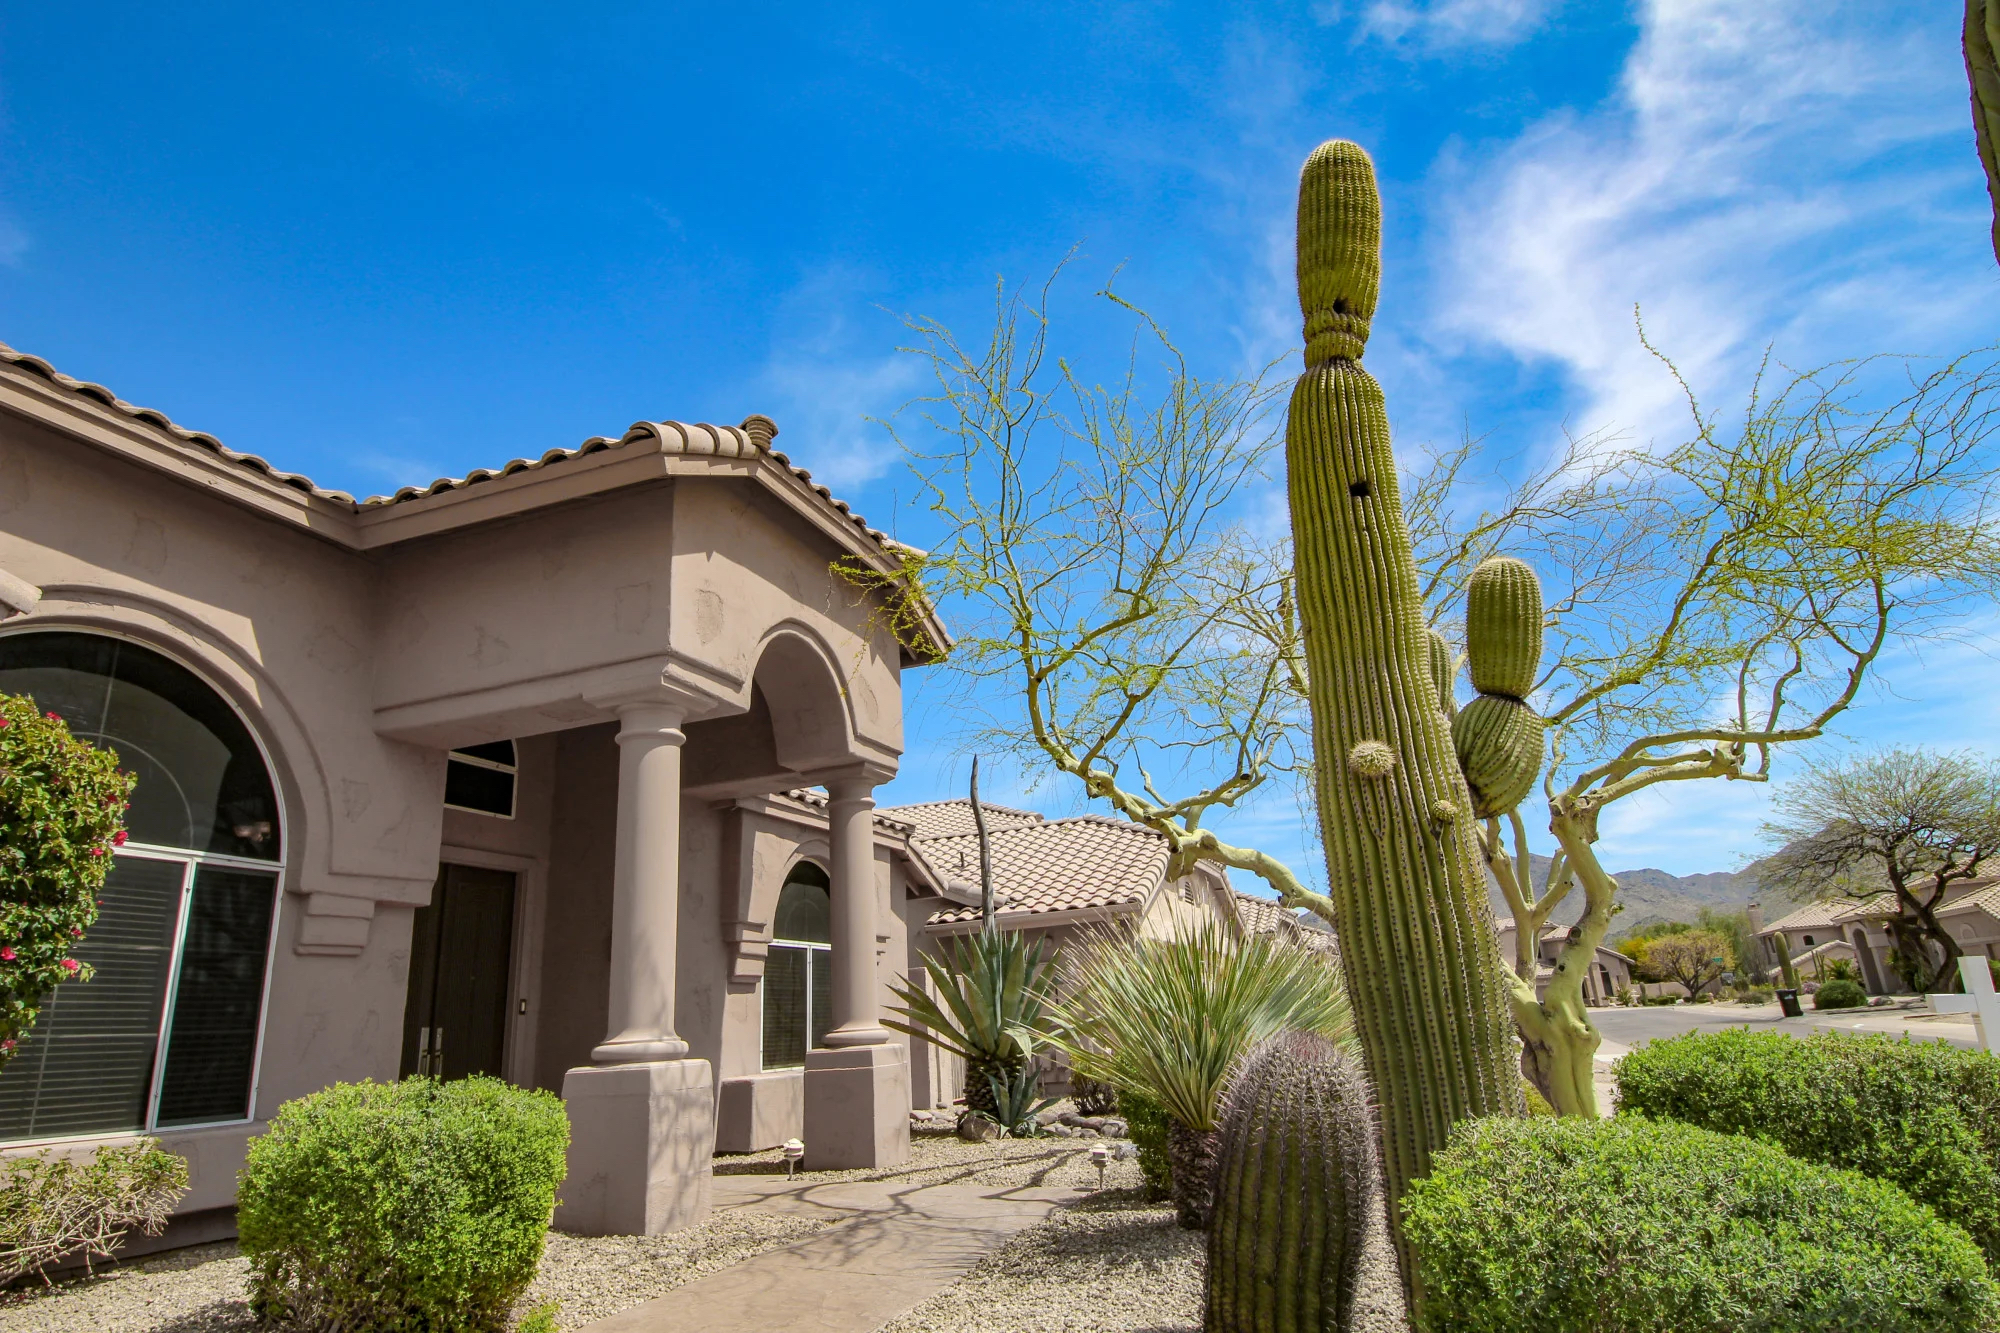 3 Tips for Finding Luxury Homes for Sale in Prescott, AZ